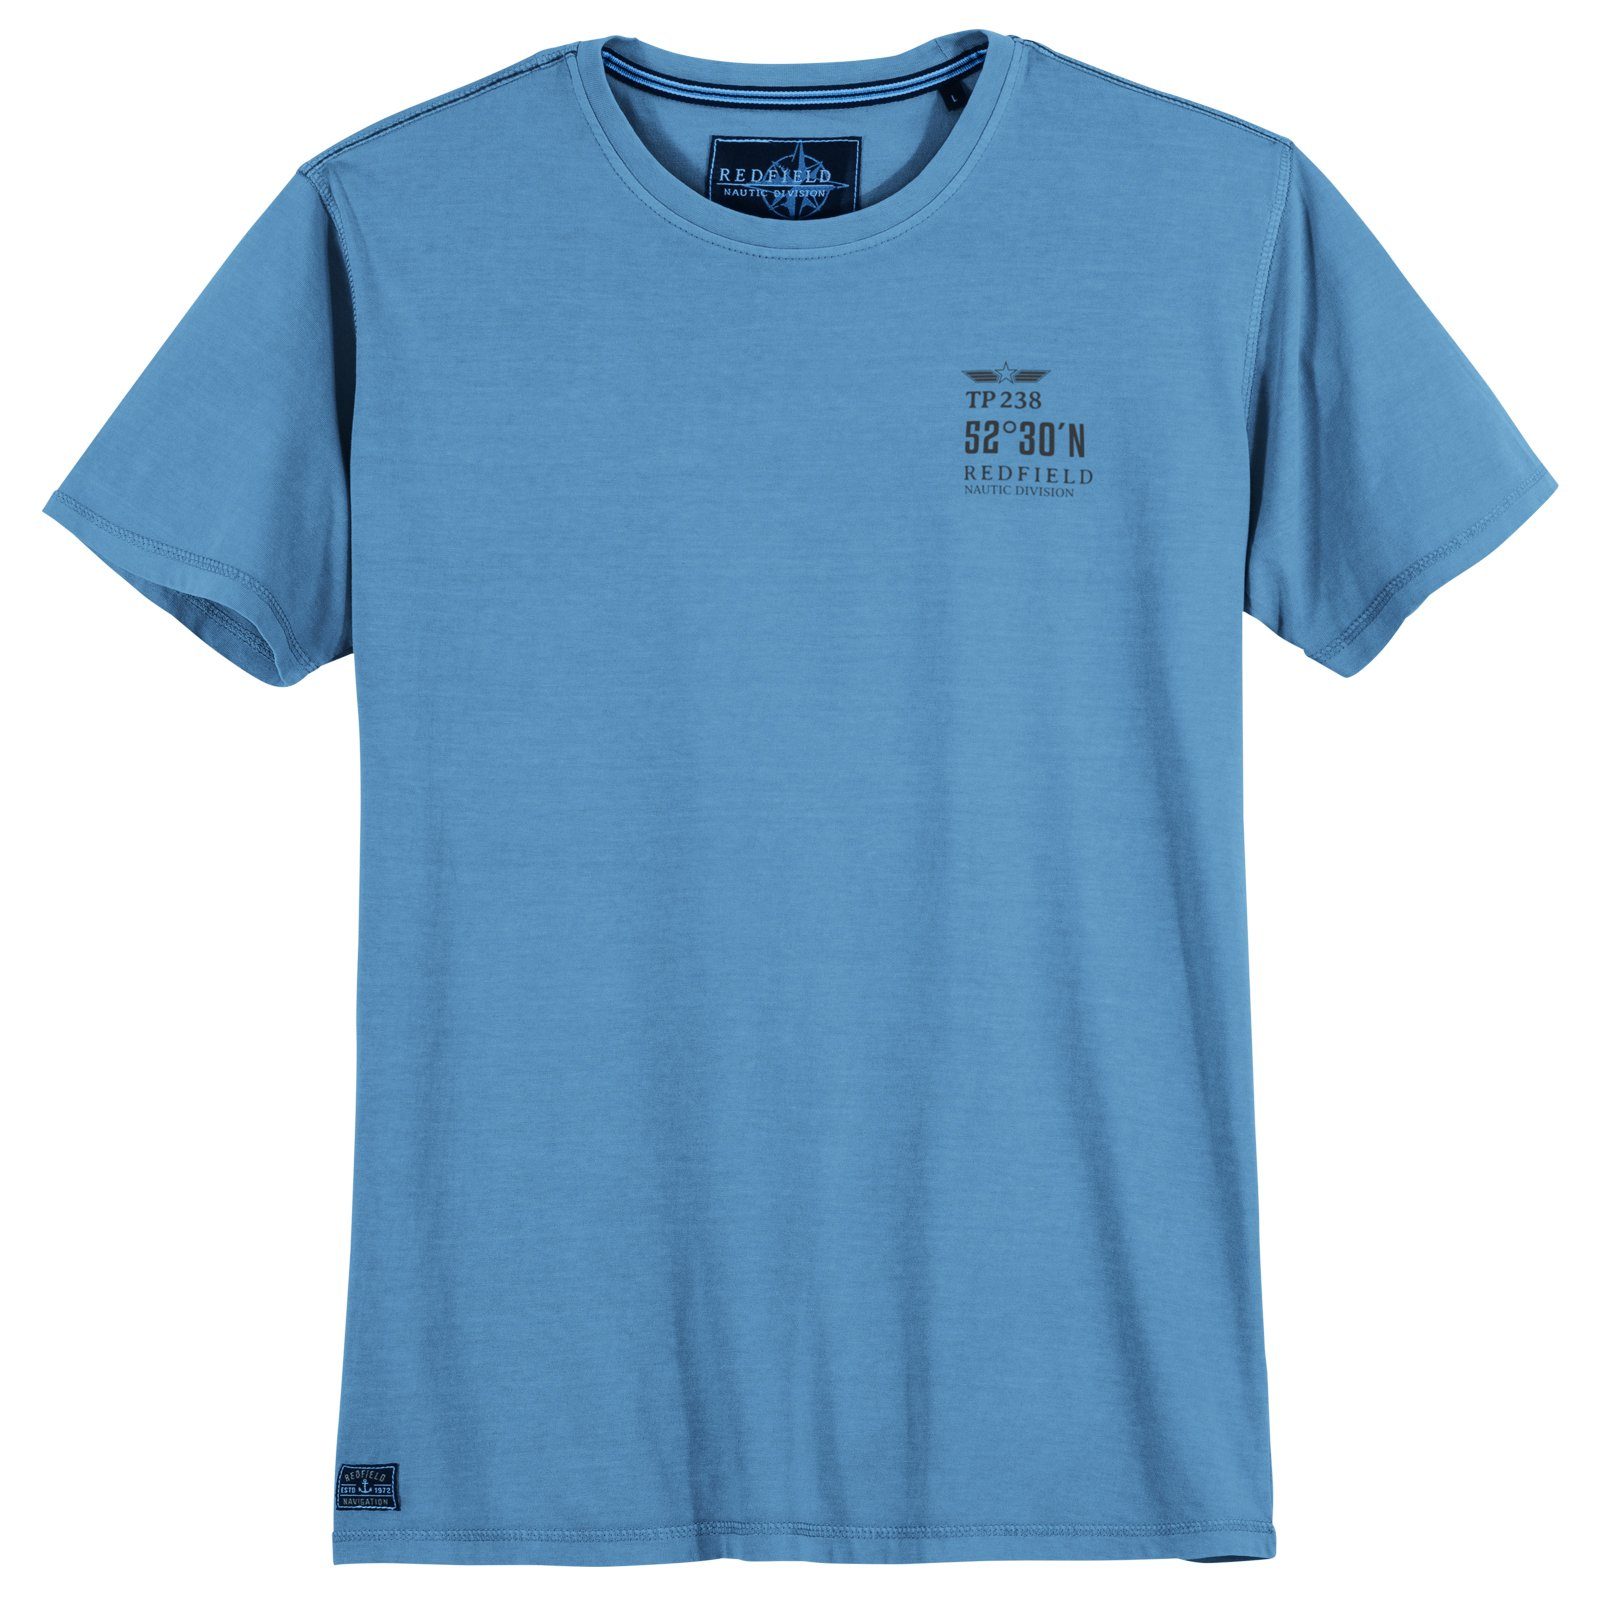 redfield Print-Shirt Große Größen Herren Vintage T-Shirt himmelblau Redfield